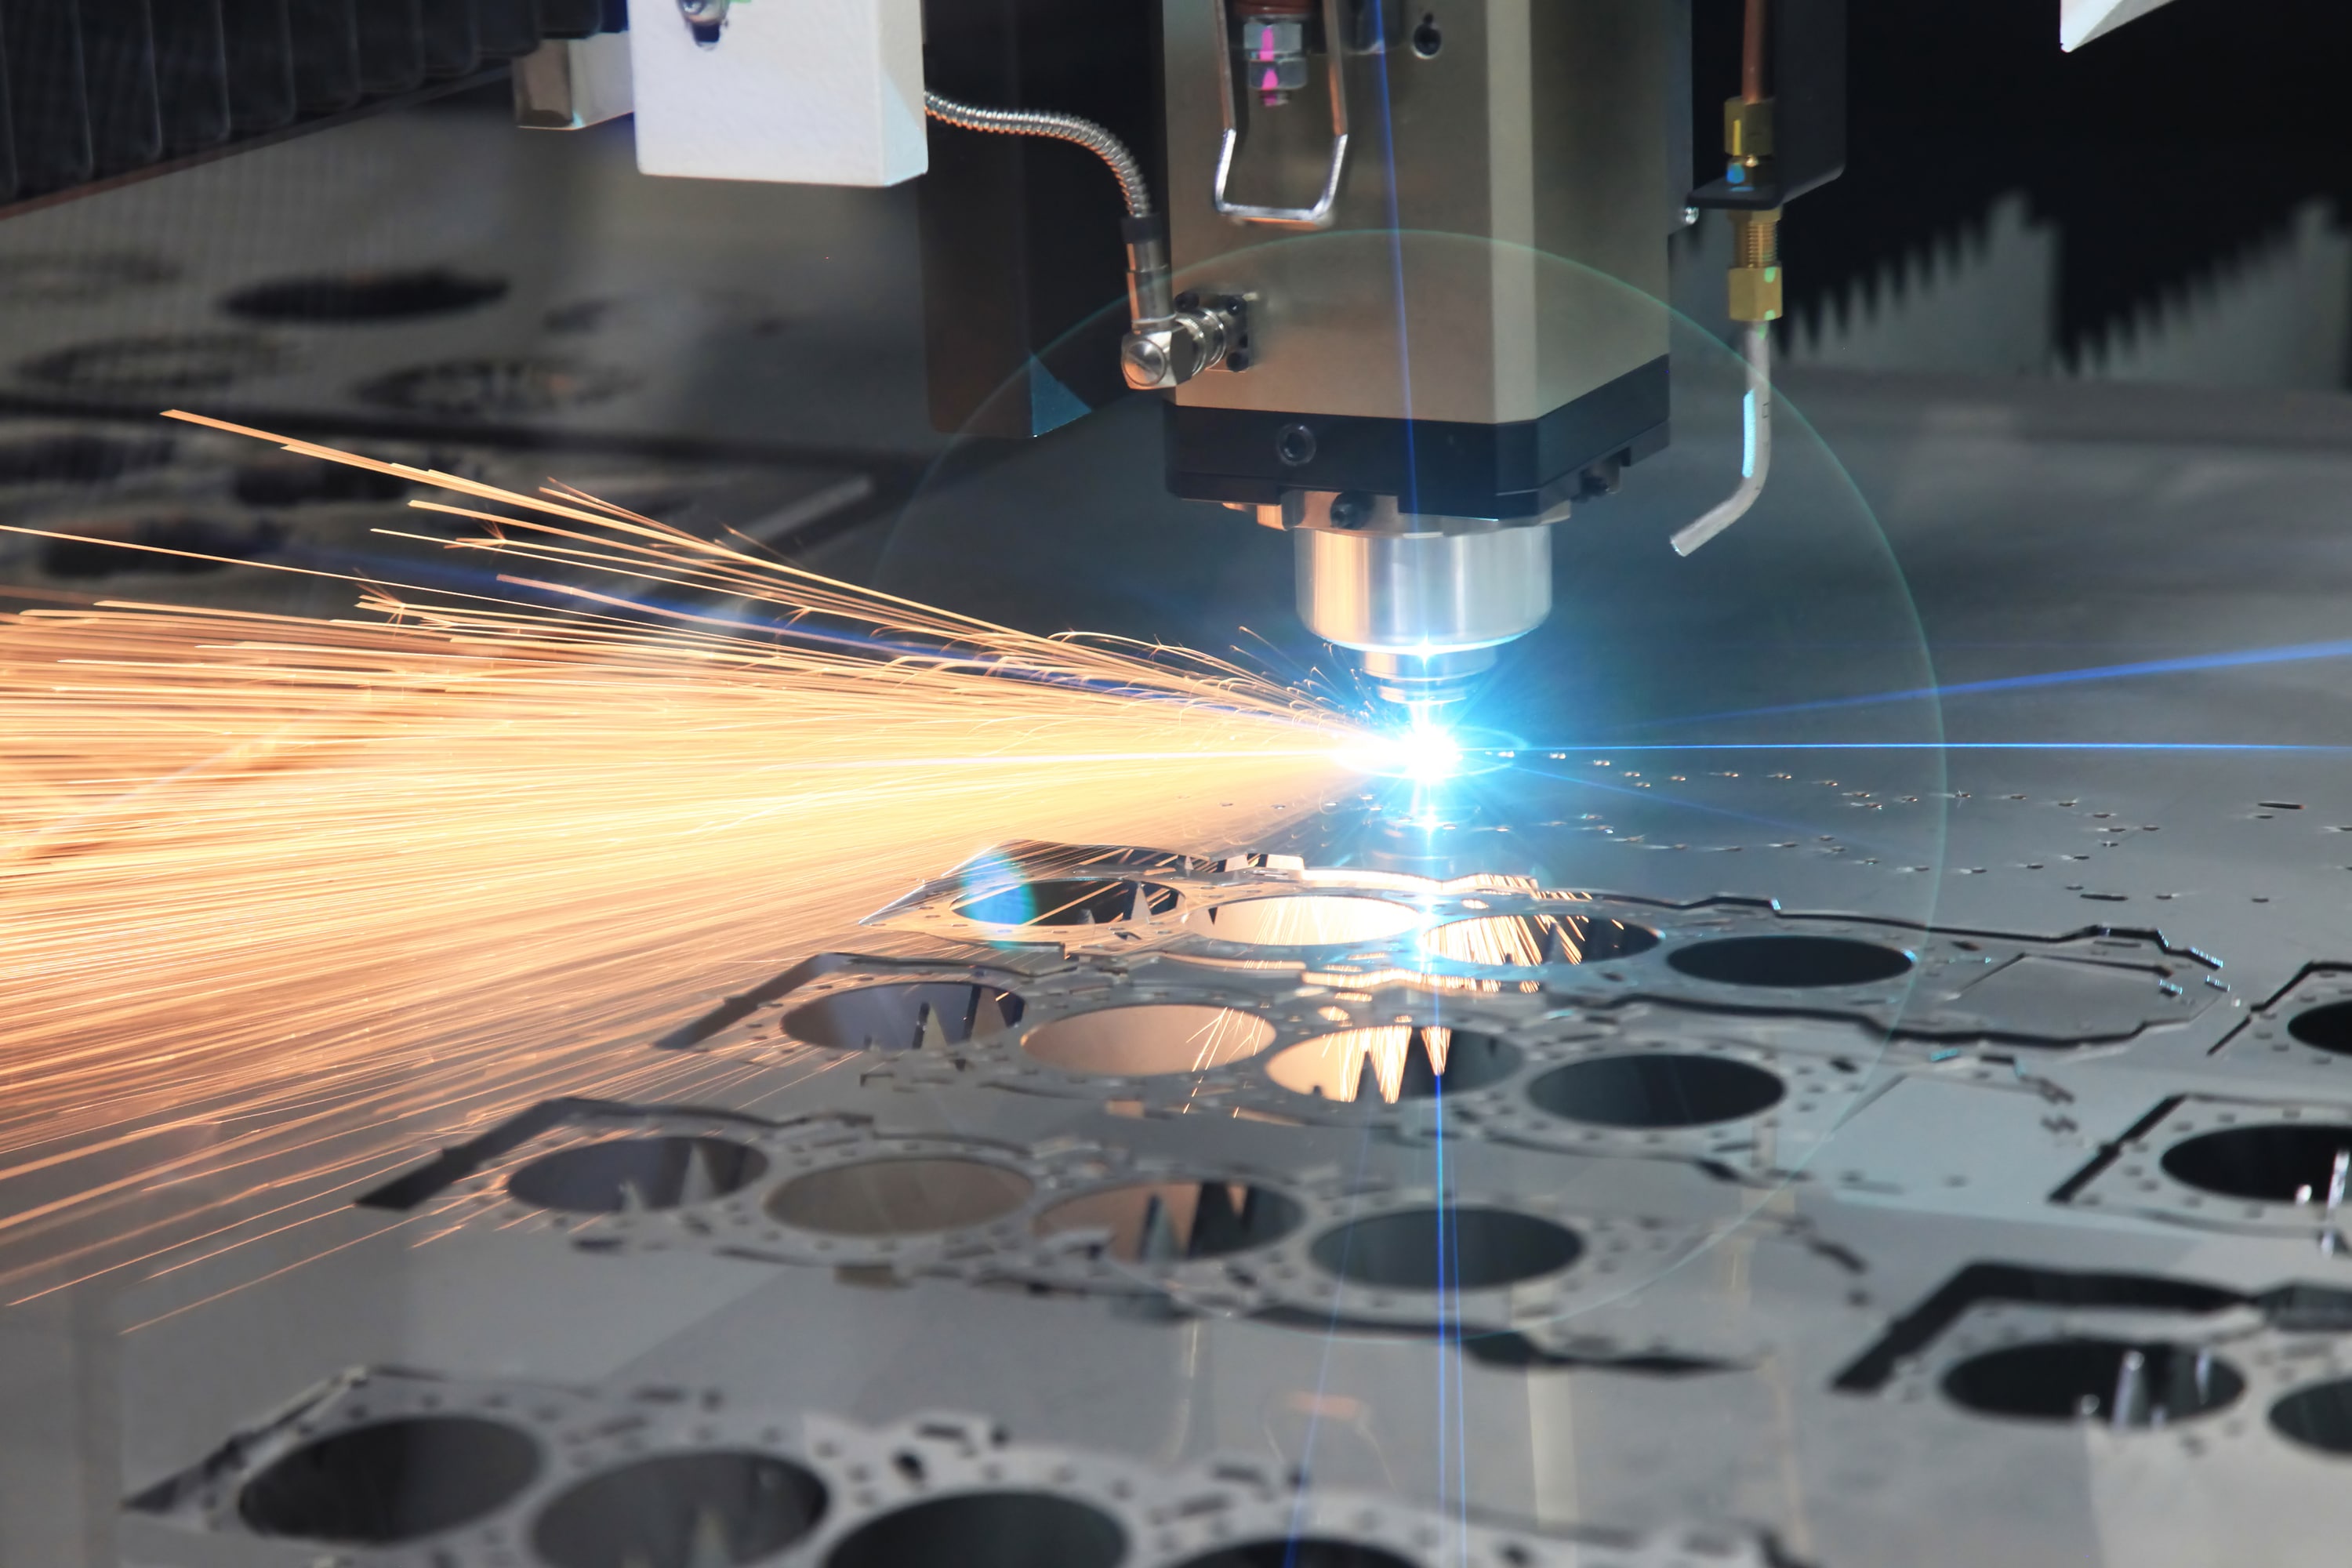 the hi precision sheet cutting process by laser cu 2021 08 26 15 33 16 utc min